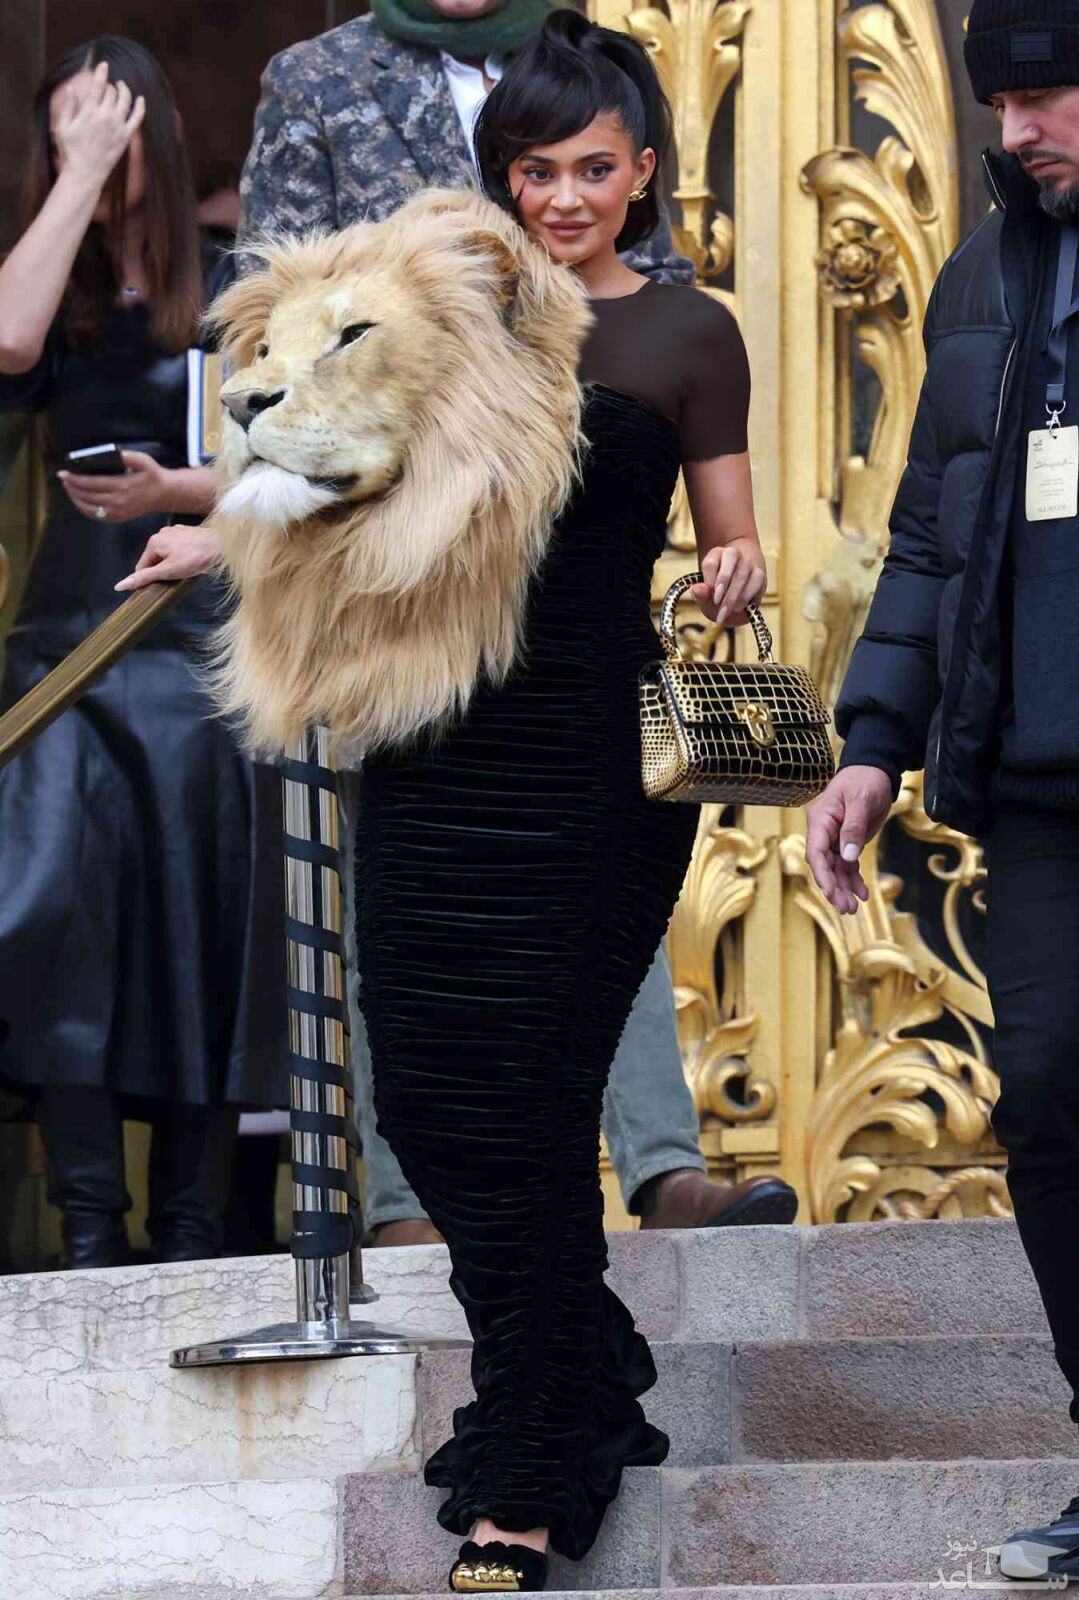 لباس حیرت‌انگیز کایلی جنر با شیر غول پیکر در فشن شو پاریس، خشم جهان را بر انگیخت!